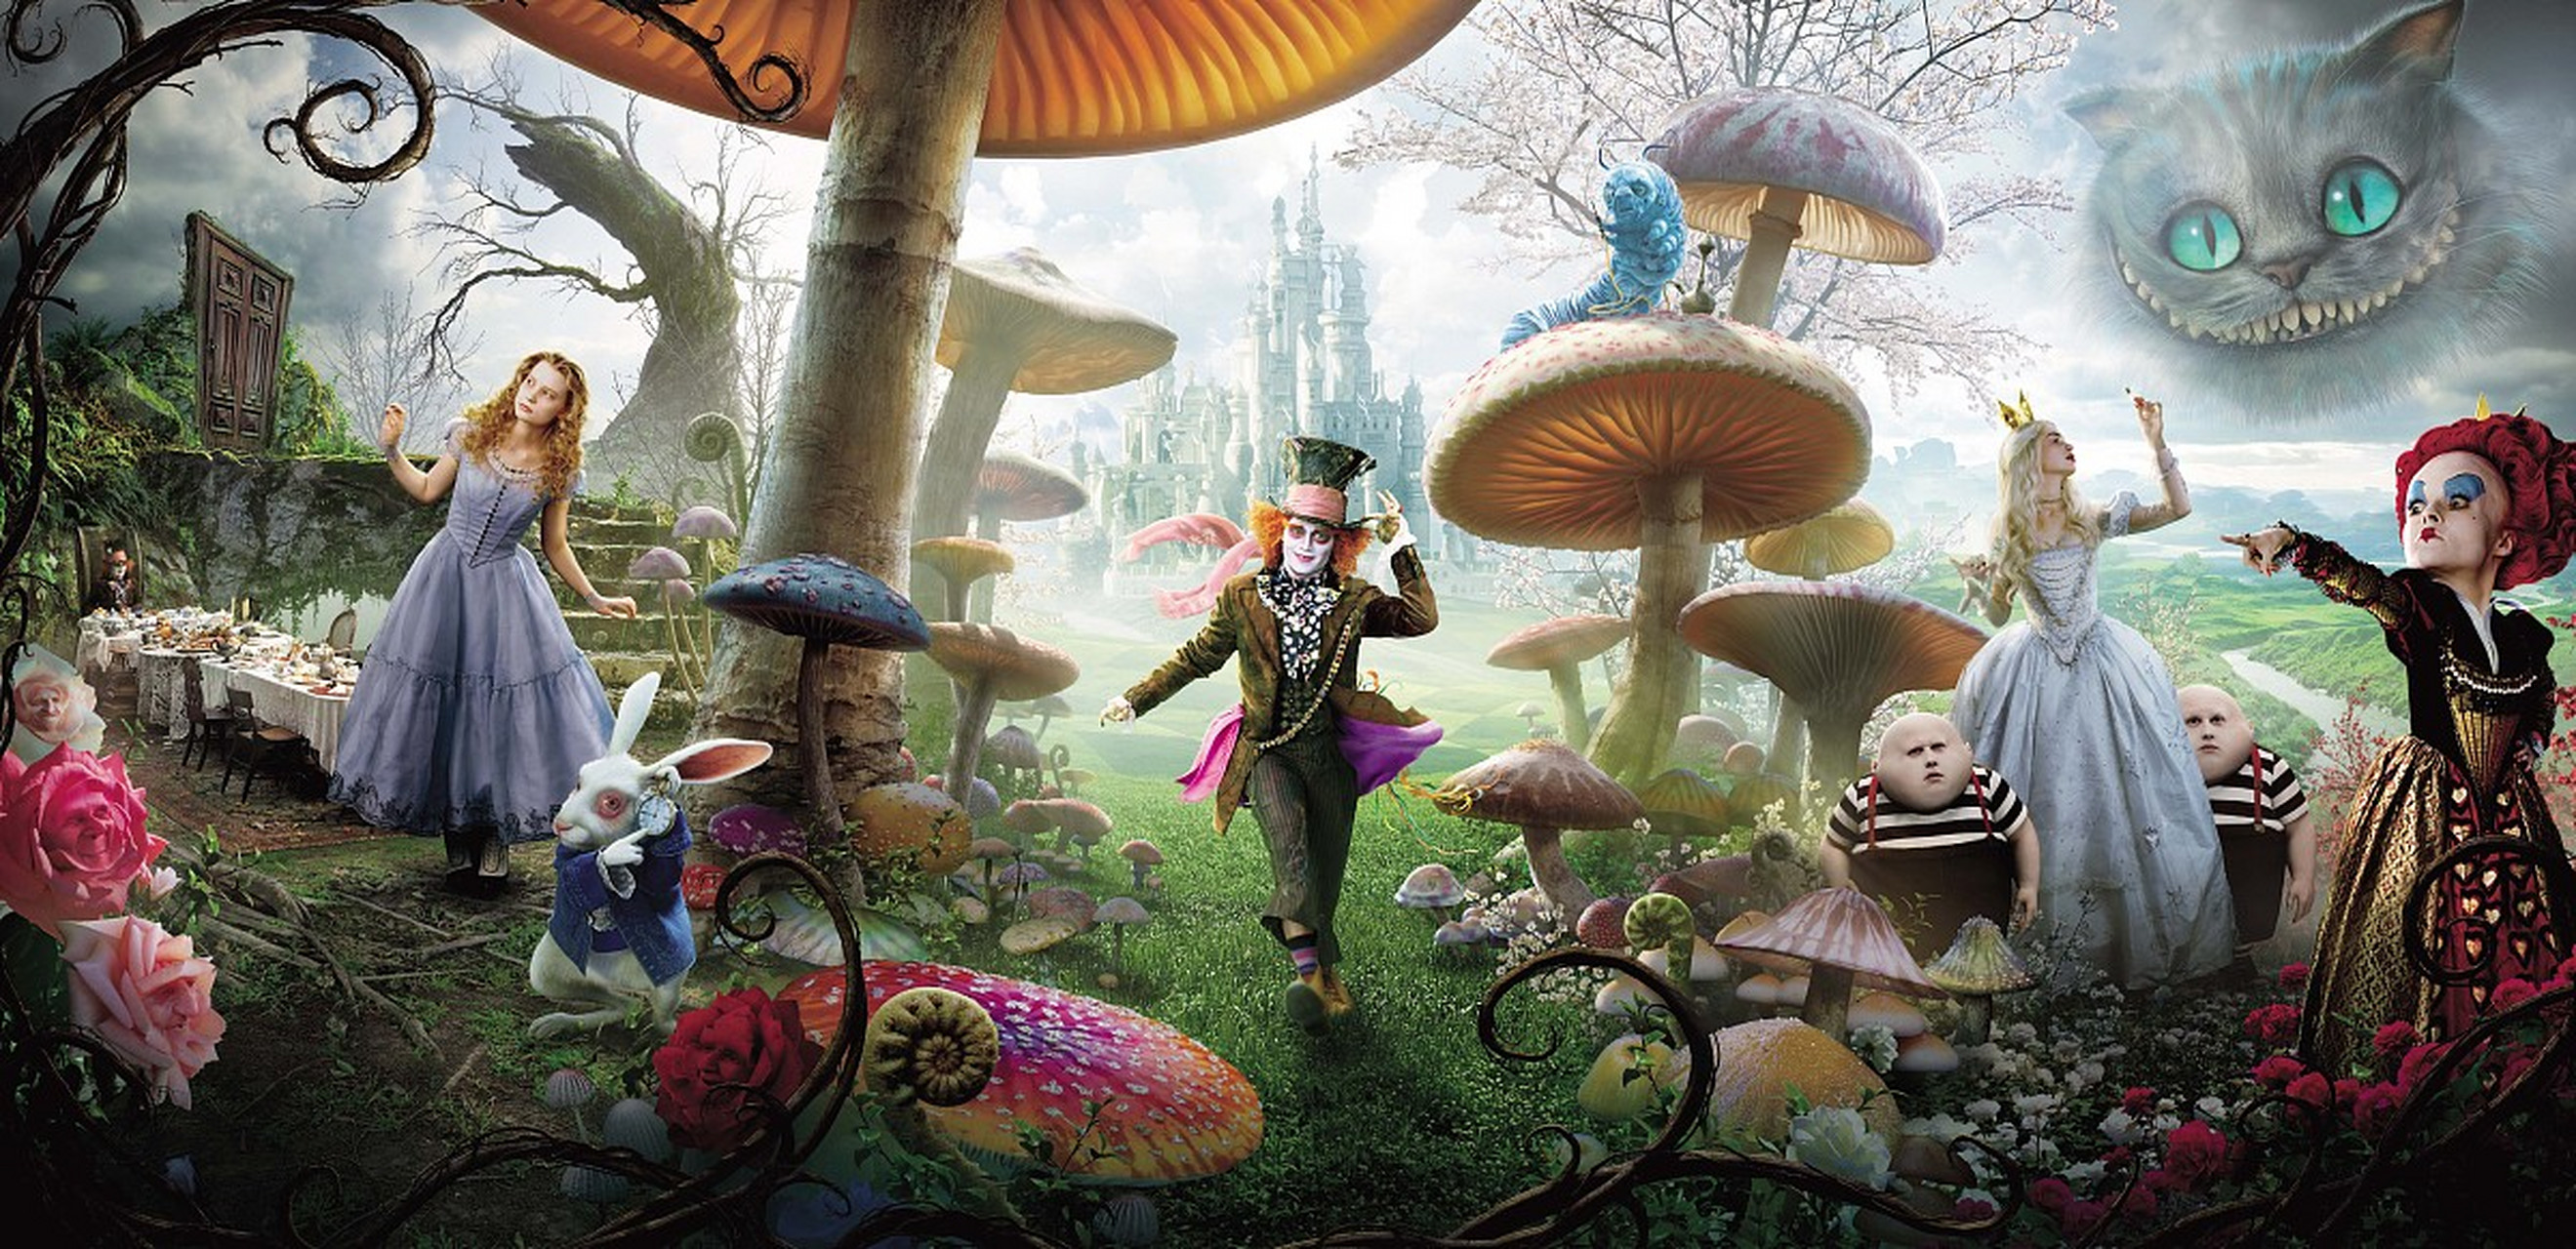 《爱丽丝梦游仙境》是英国作家刘易斯·卡罗尔创作的经典童话,讲述小